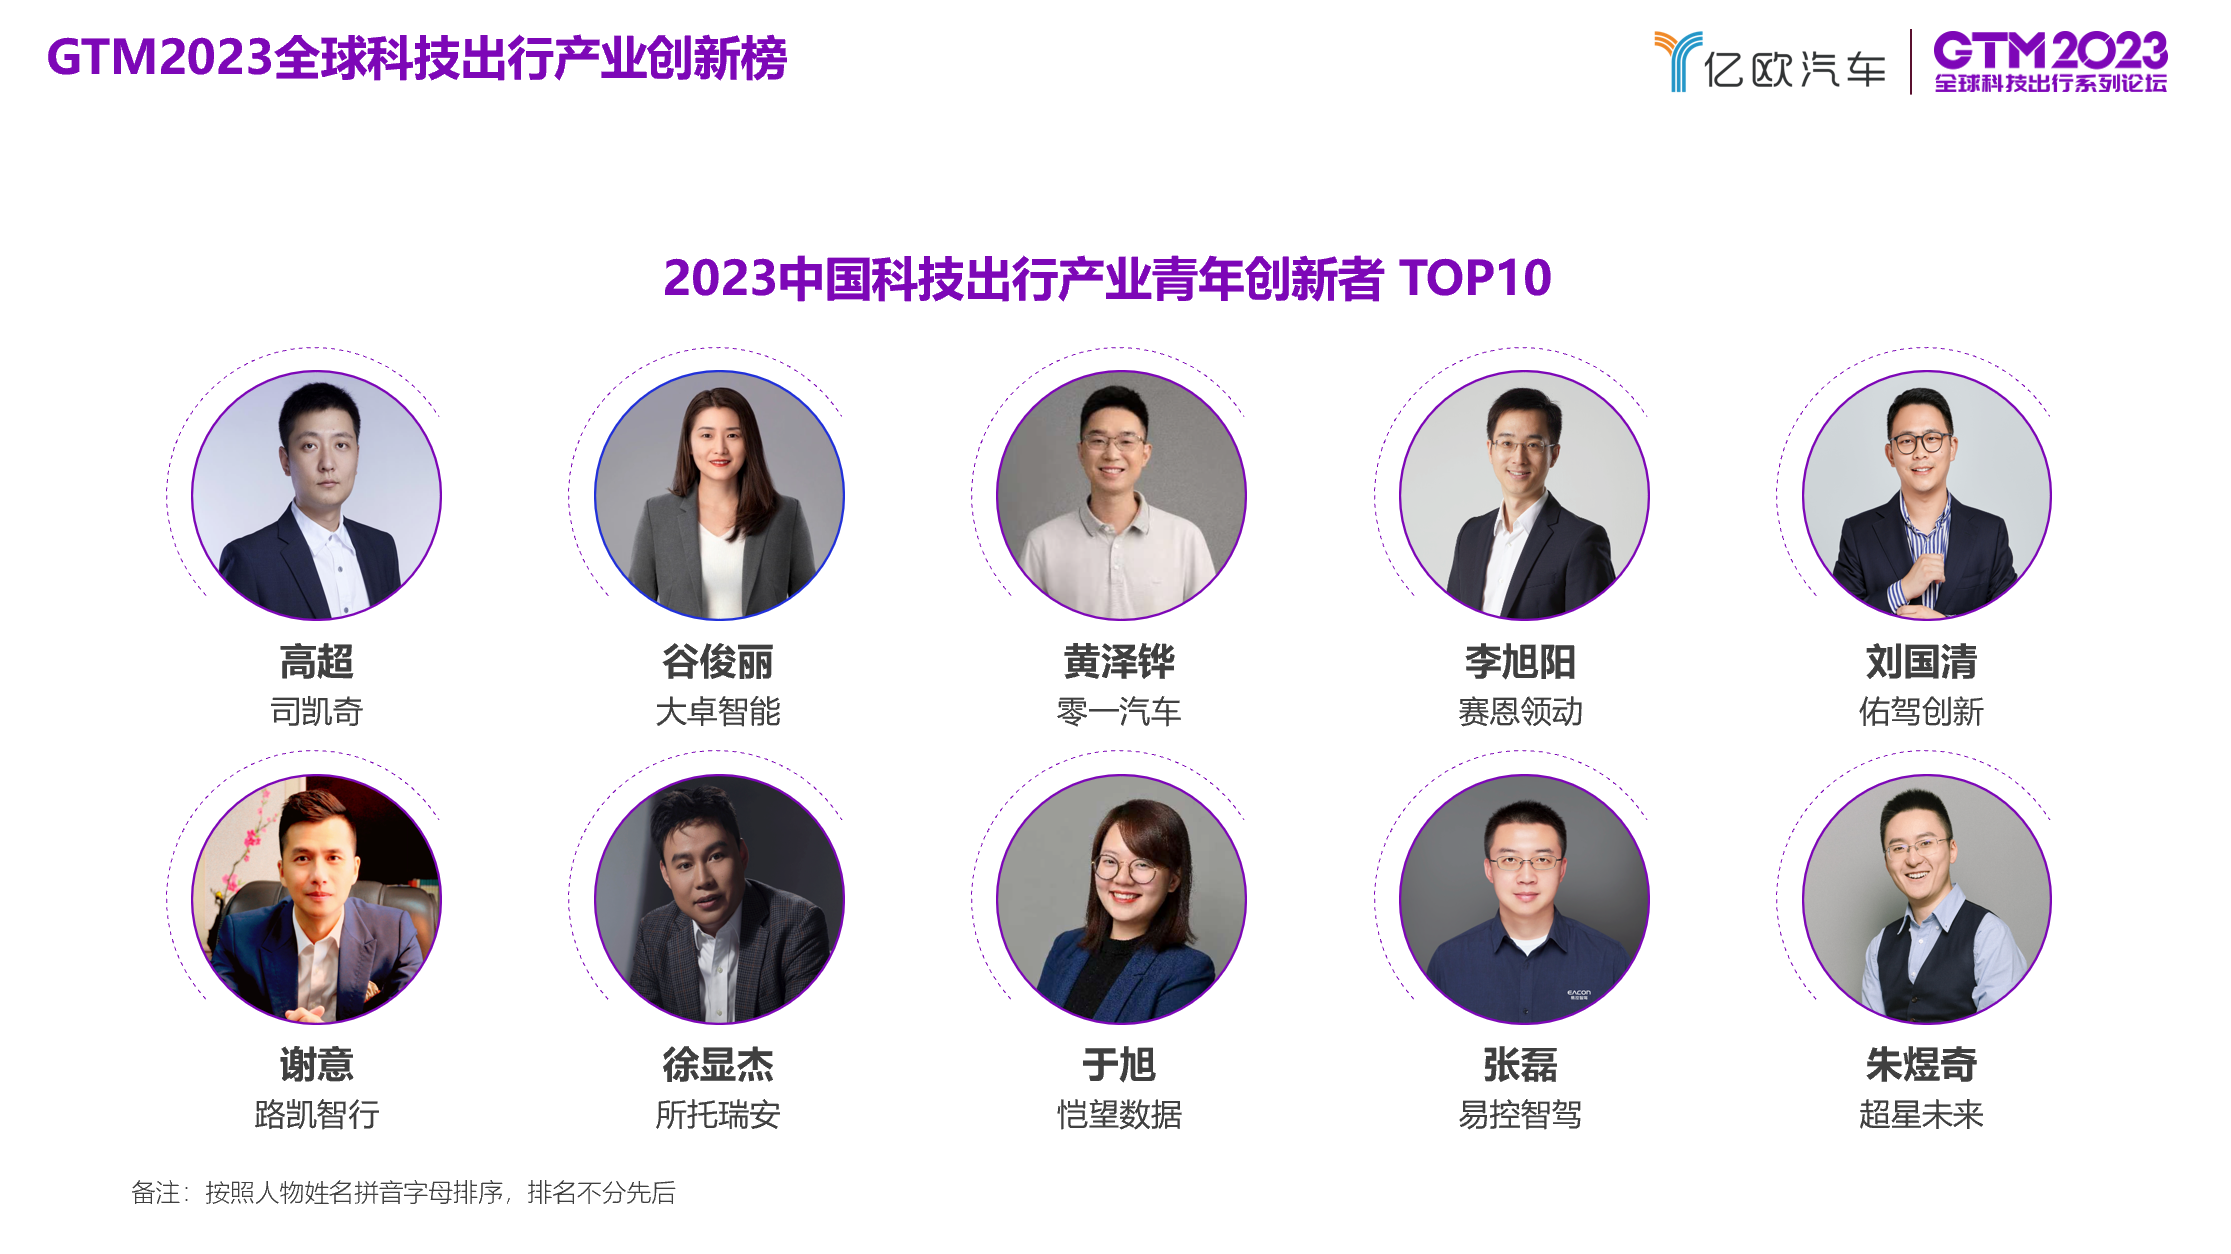 “2023中国科技出行产业青年创新者 TOP10”榜单正式发布